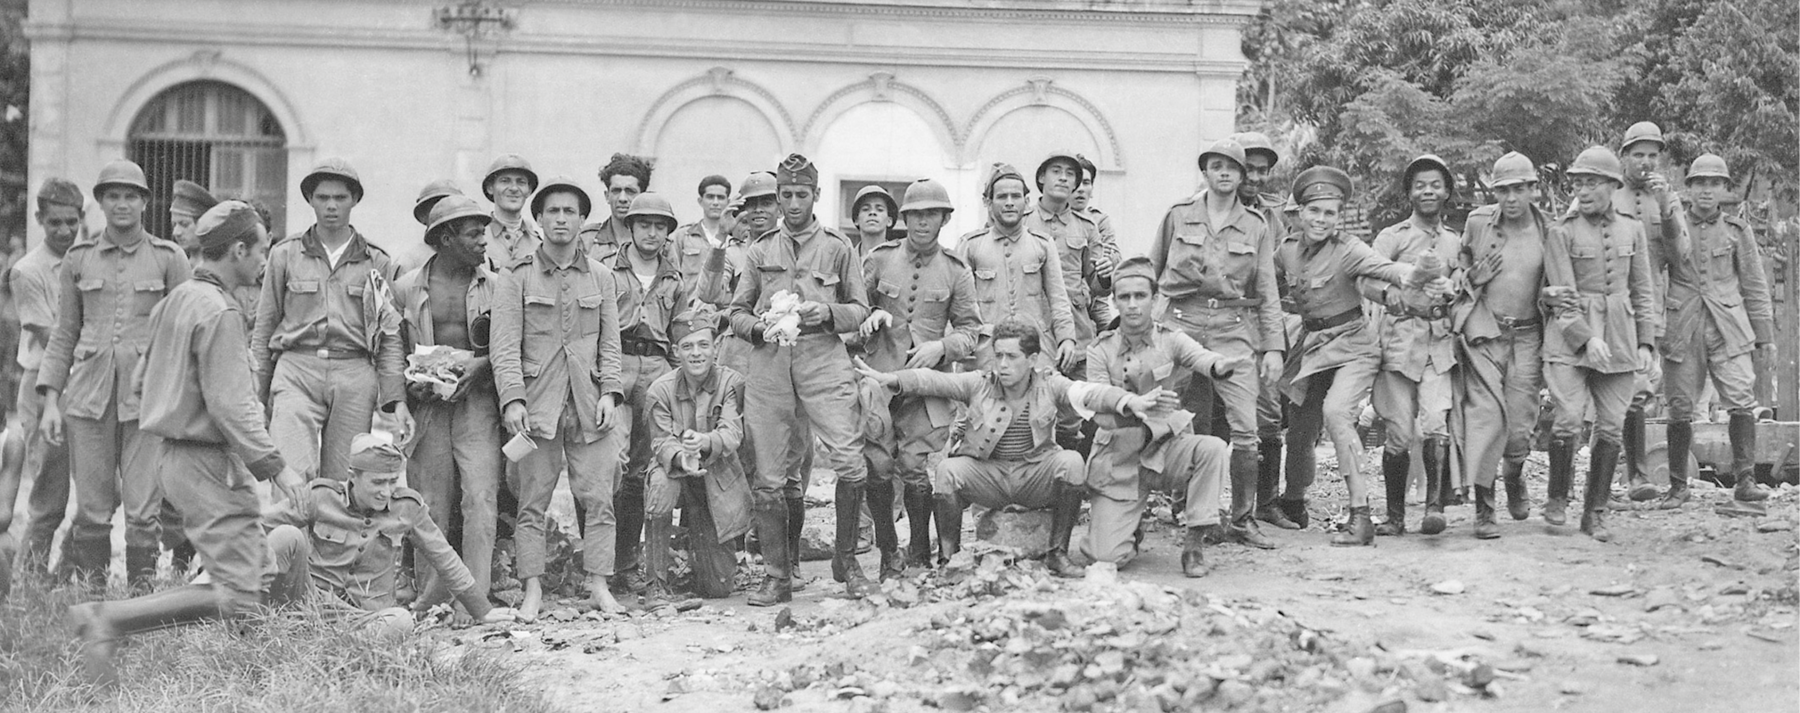 Fotografia em preto e branco. Grupo de homens posando para foto. Estão descontraídos. Todos vestem roupas militares, a maioria usa capacete.